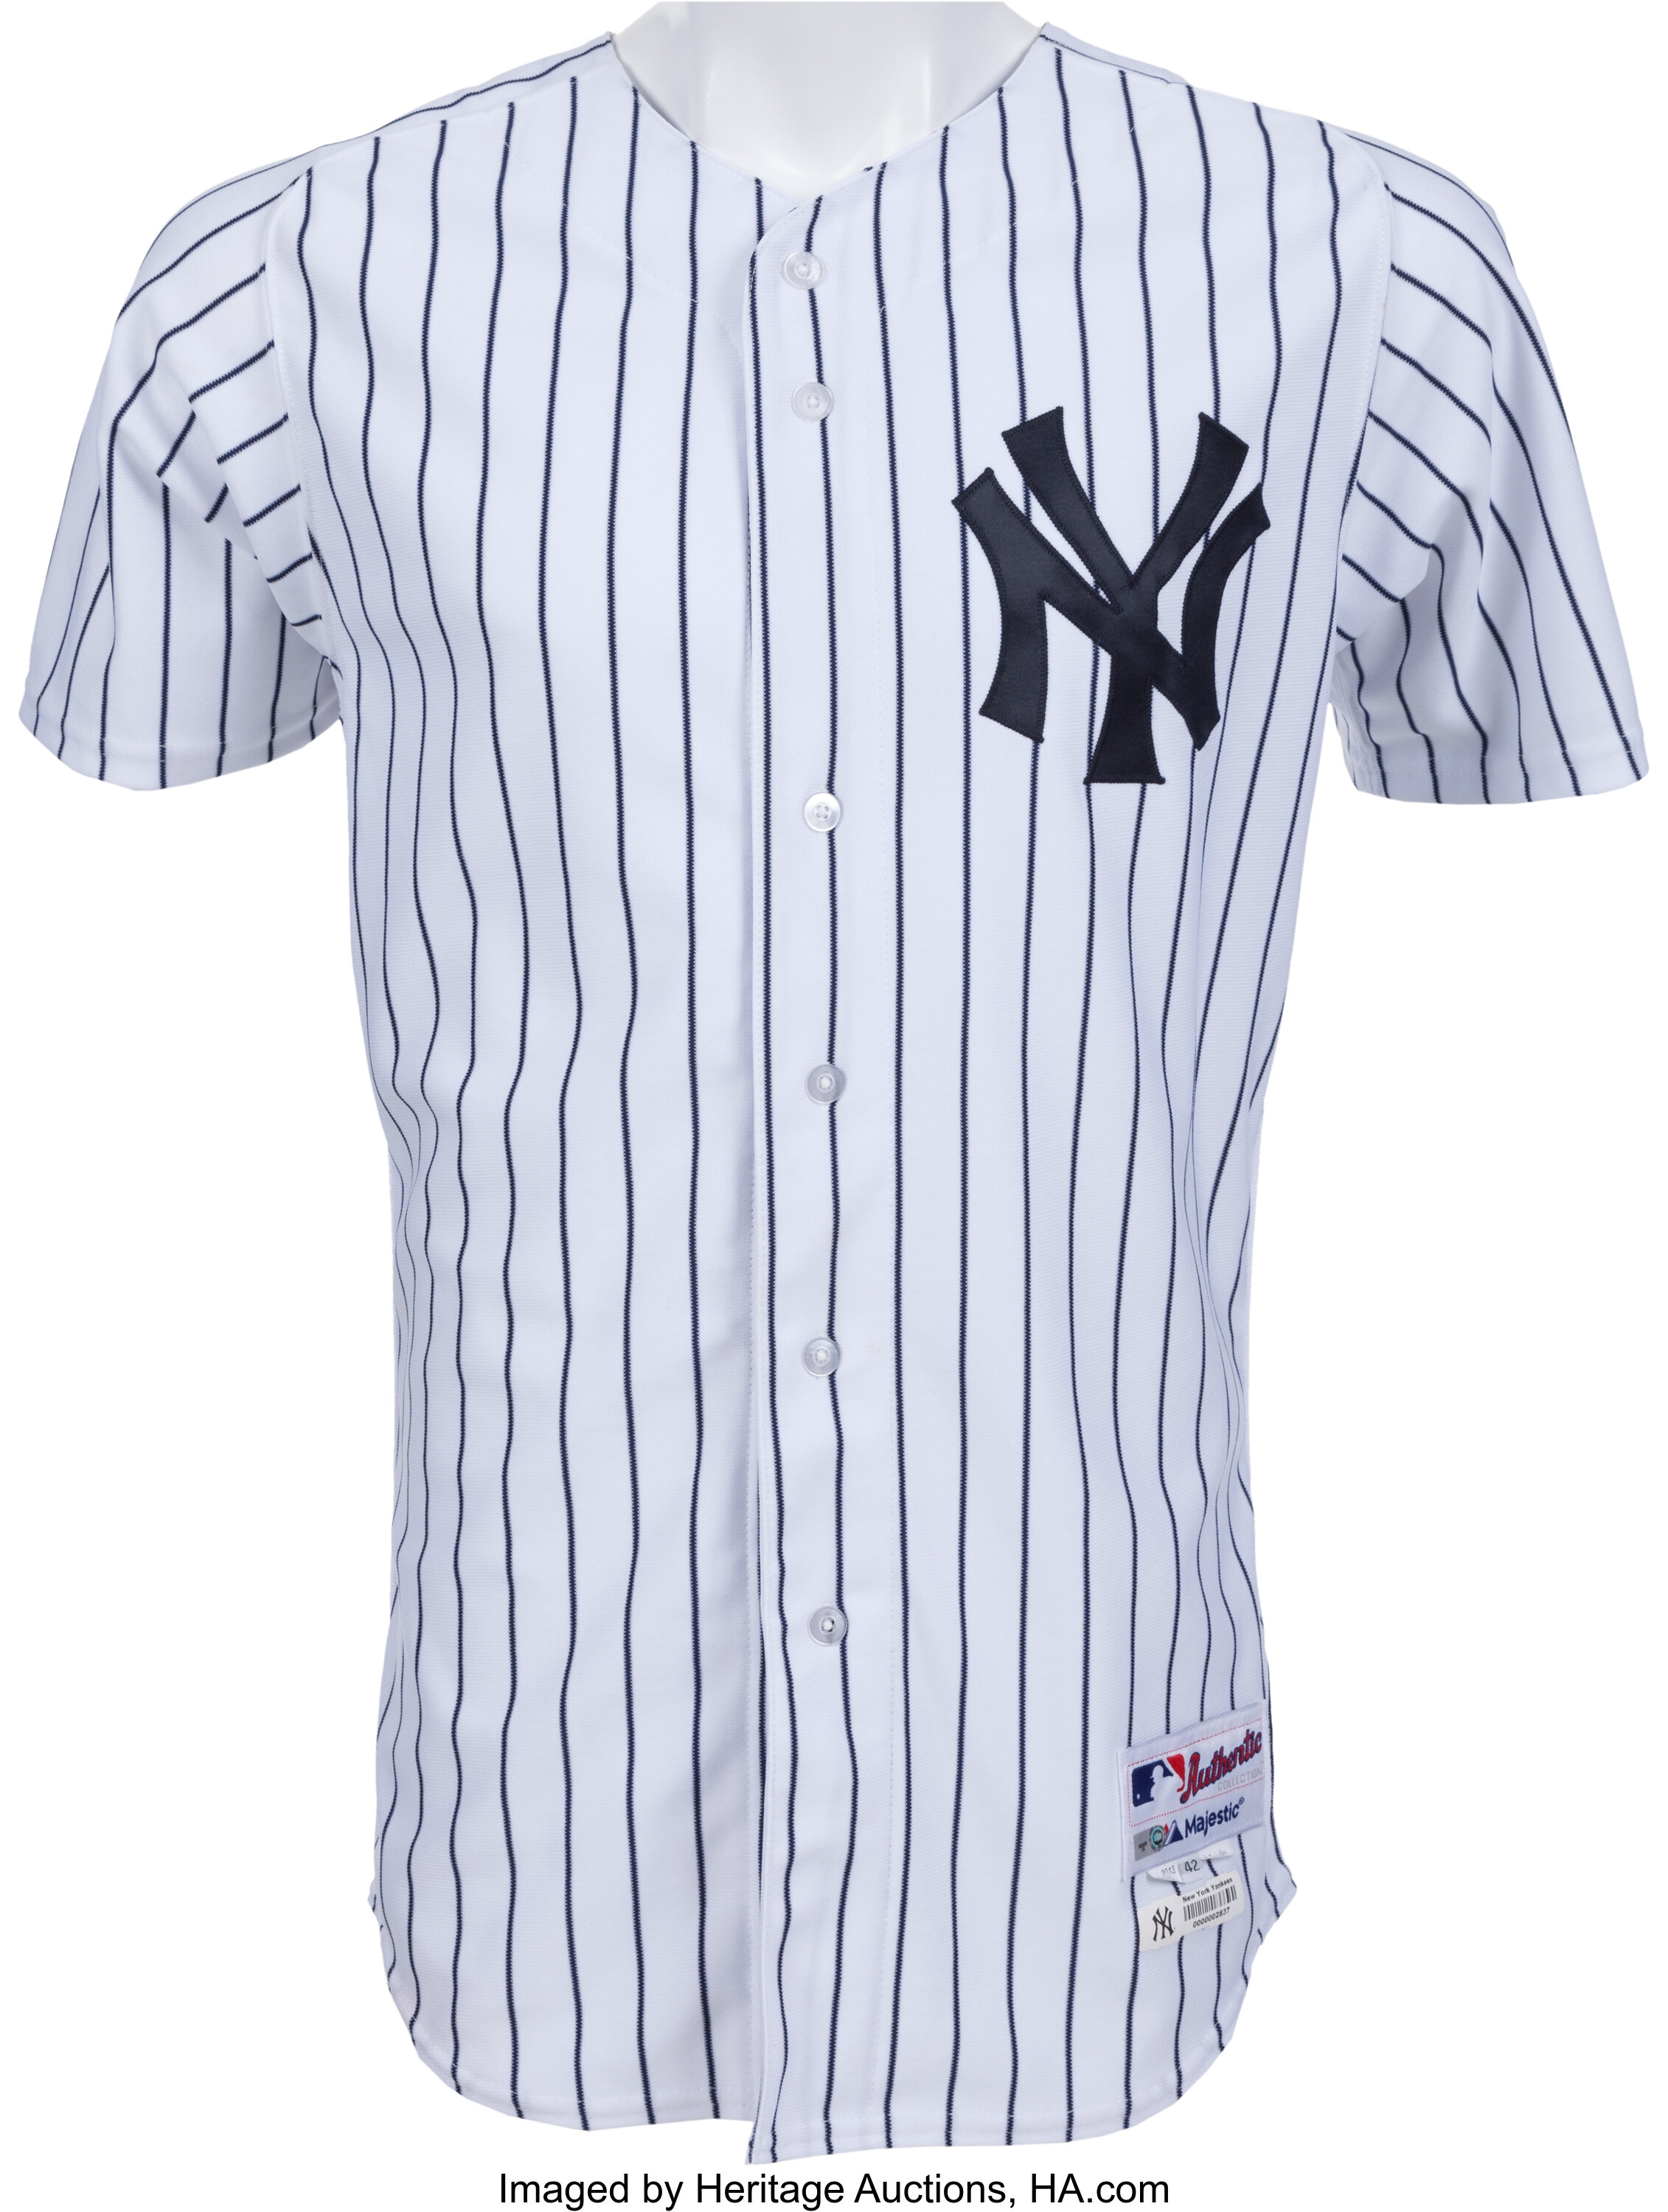 2013 Ichiro Suzuki Game Worn New York Yankees Jersey. Baseball, Lot  #82207